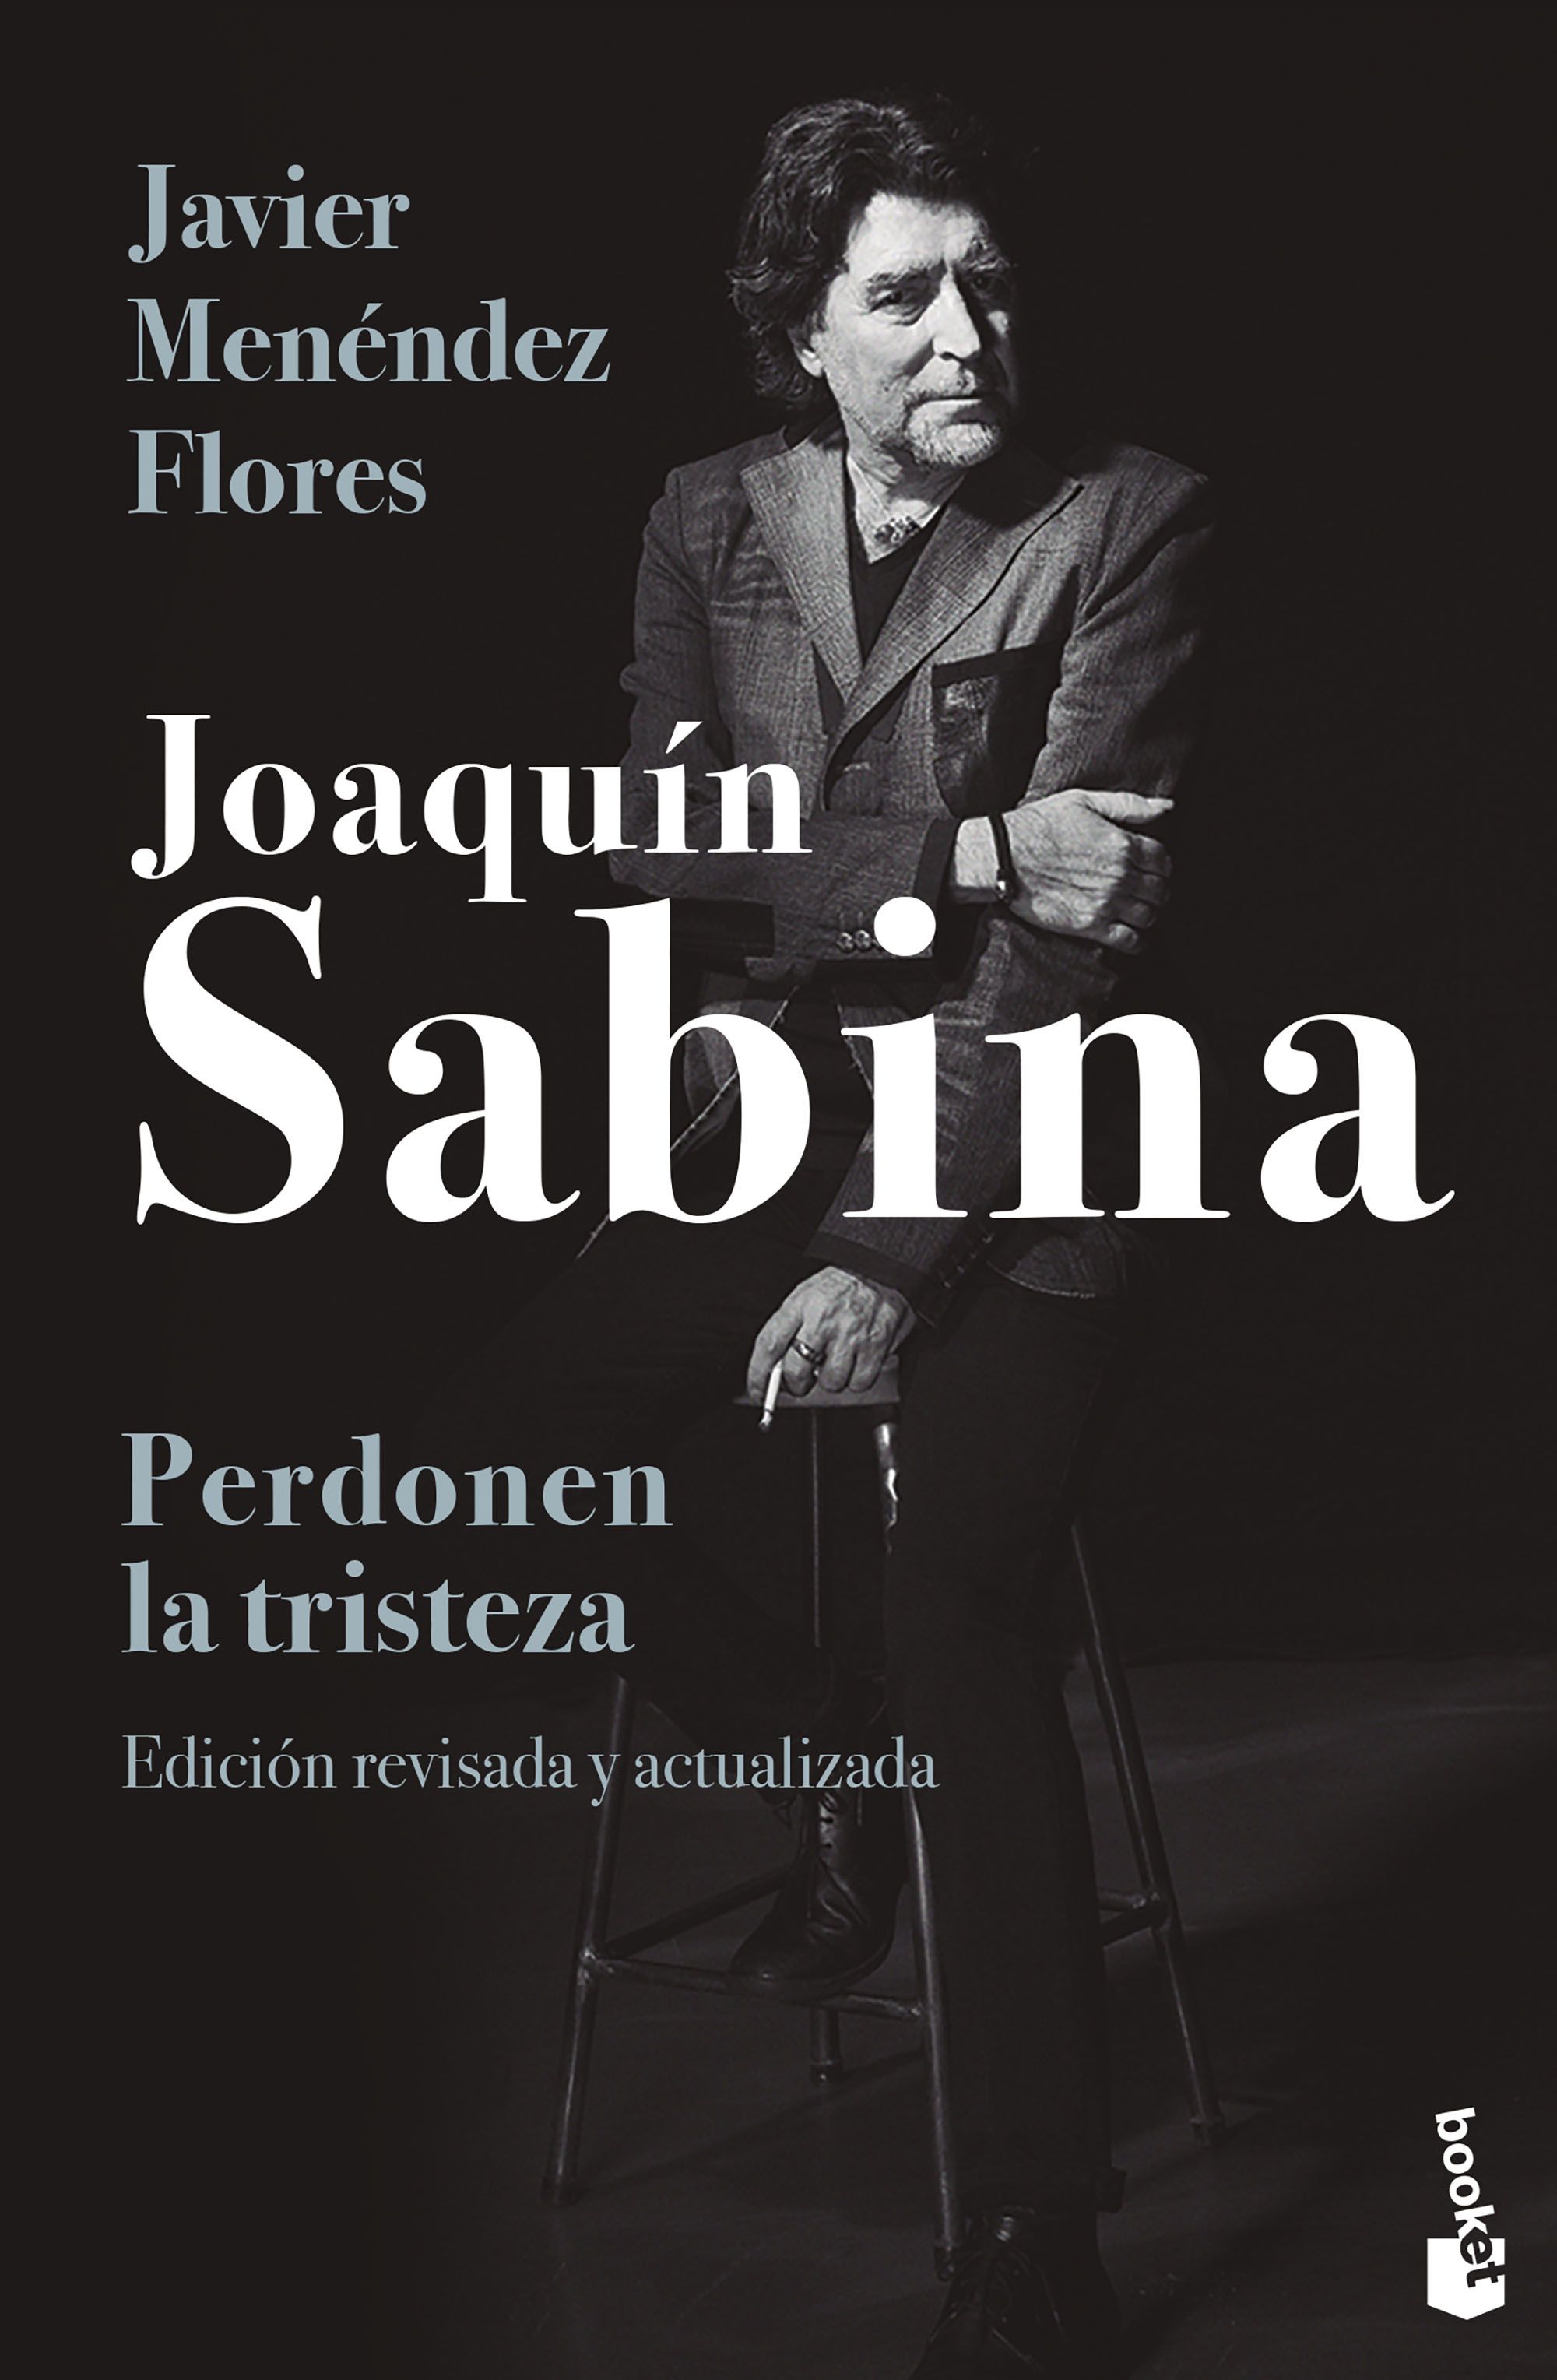 Joaquín Sabina